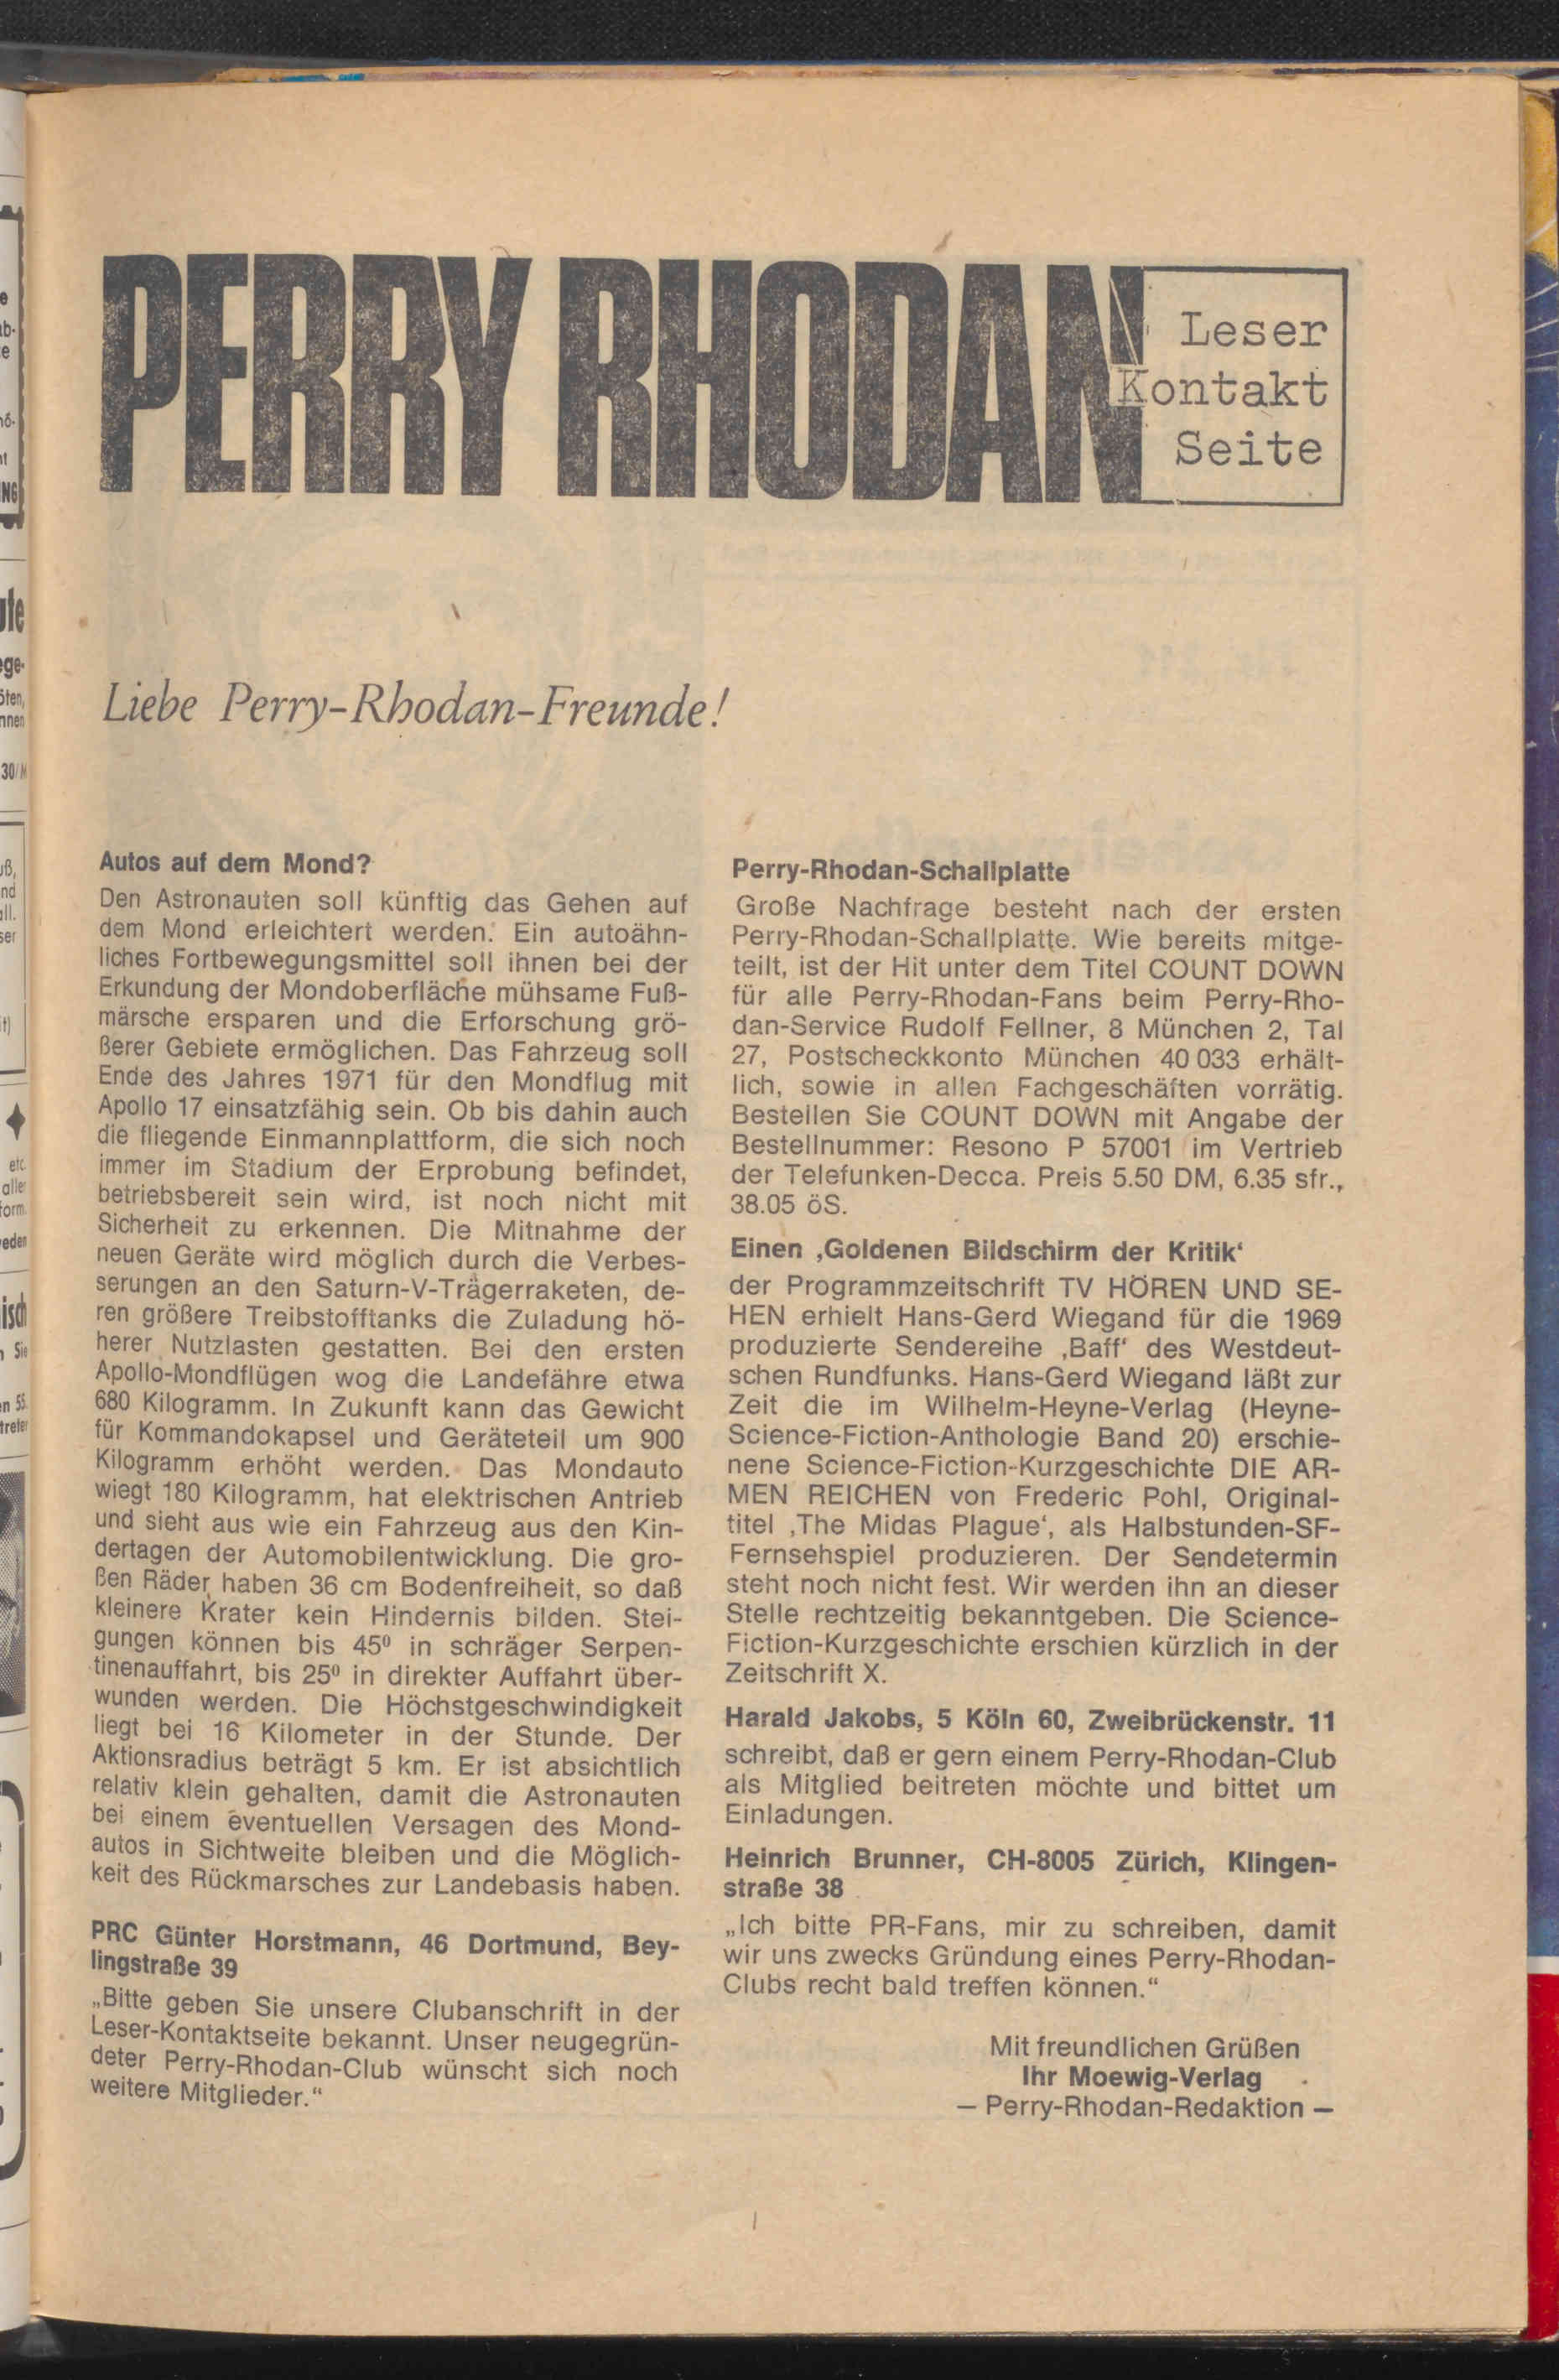 Die Abbildung zeigt eine Perry Rhodan-Leserkontaktseite im Heft.